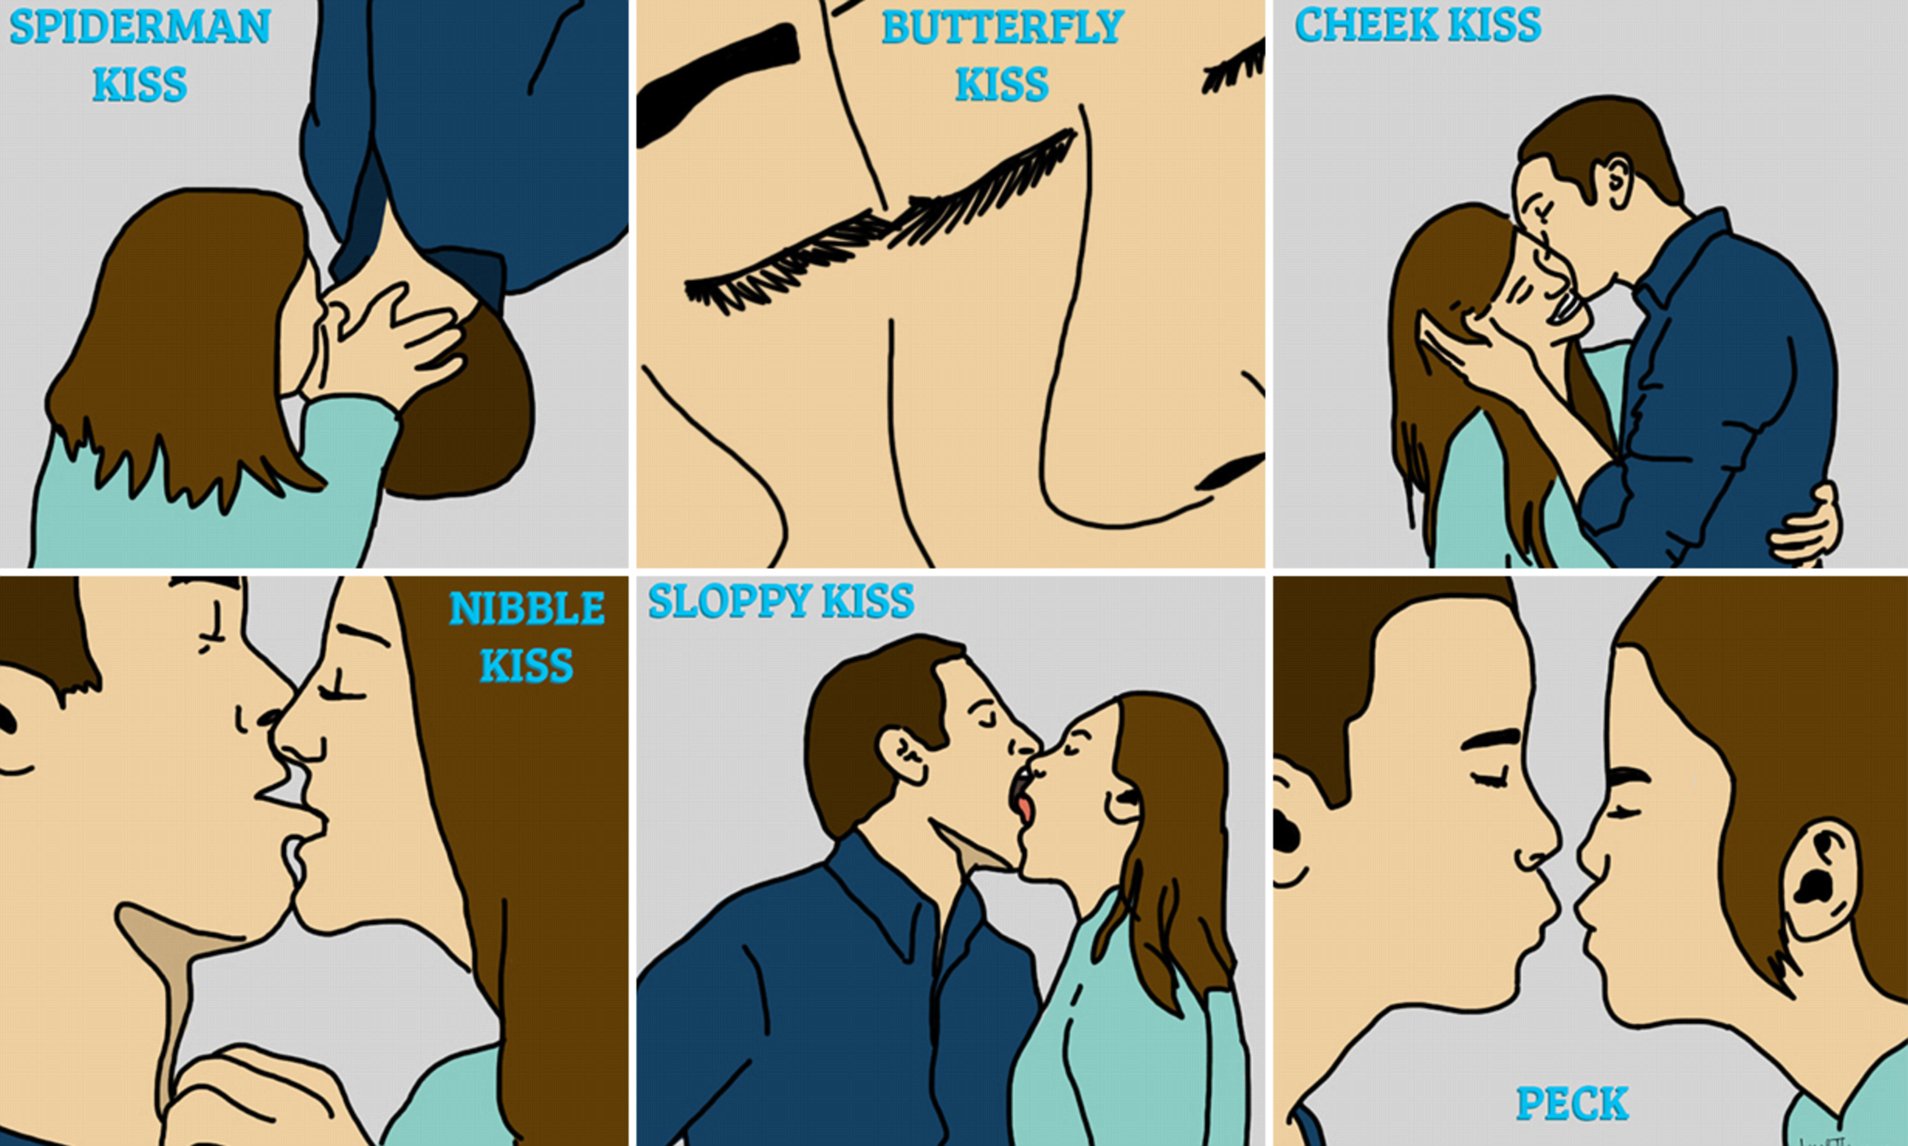 Научиться целоваться без партнера